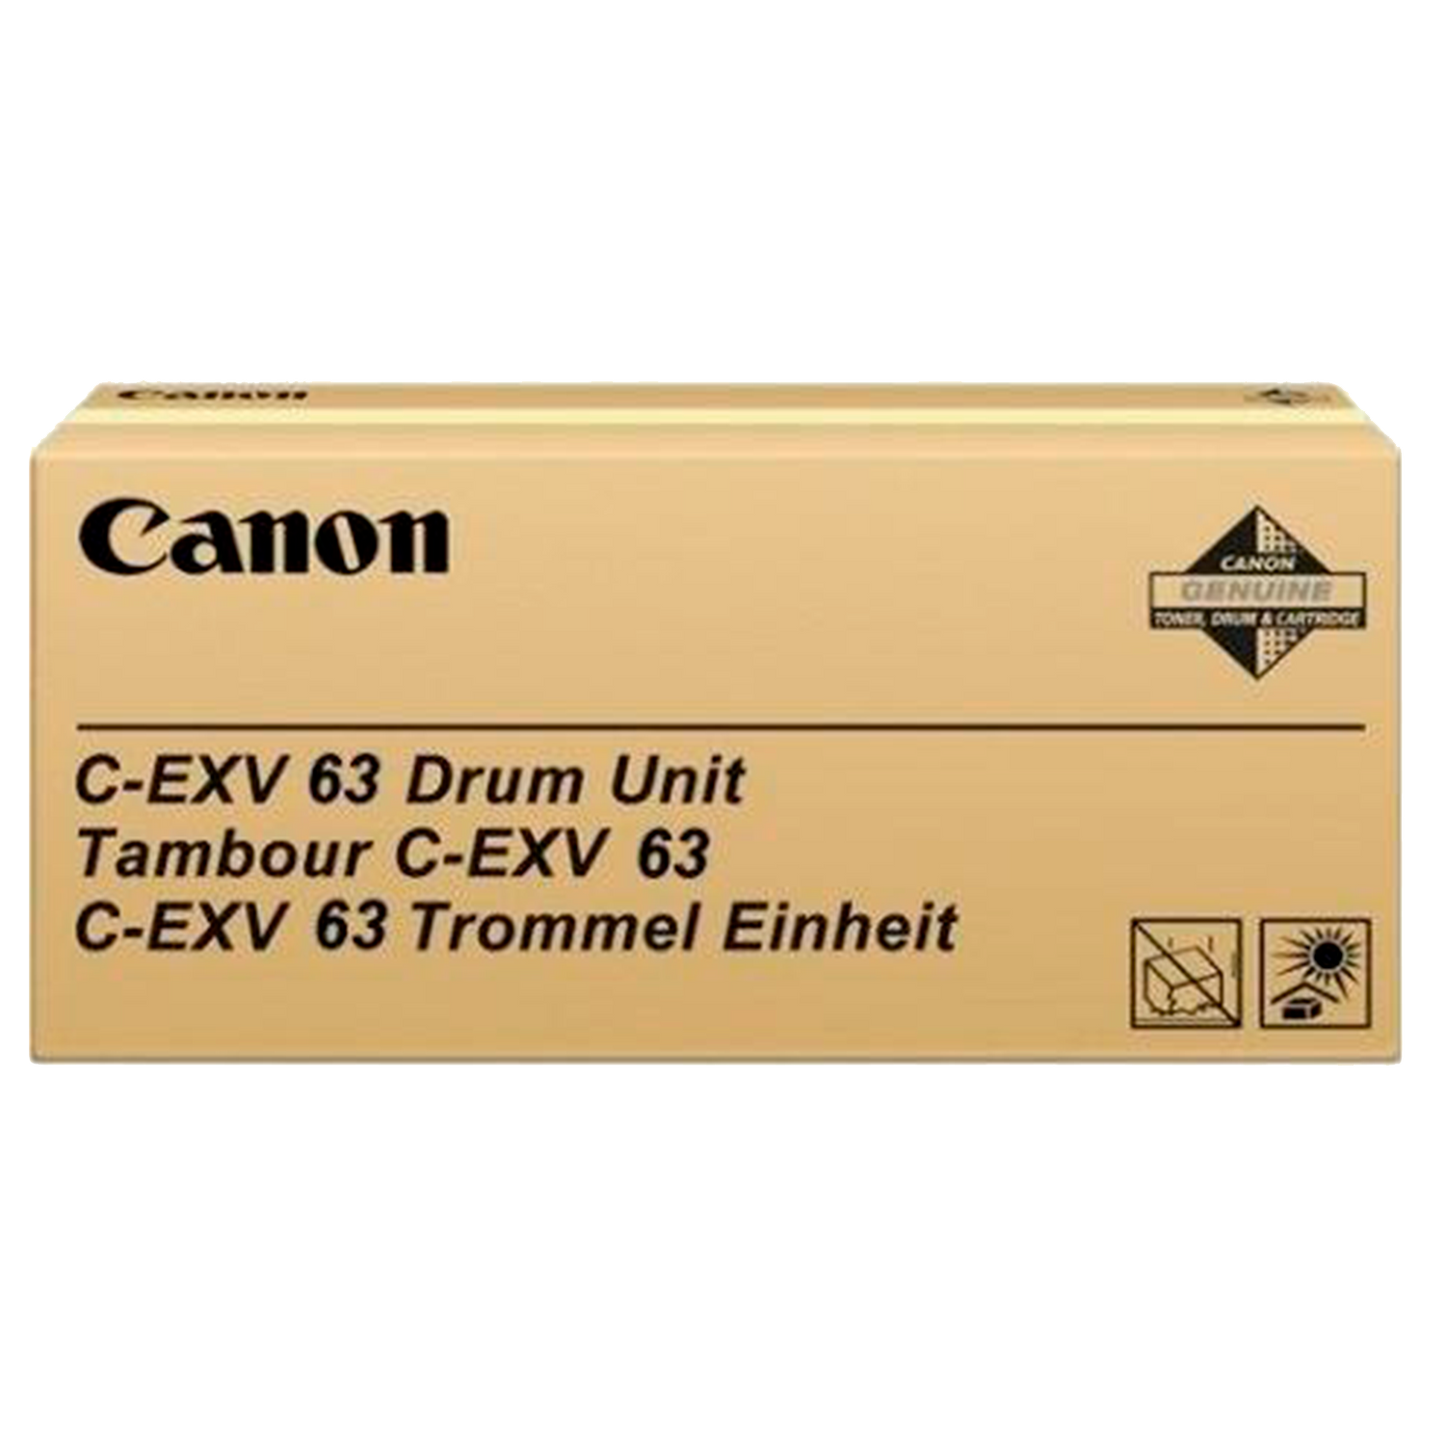 Canon C-EXV 63 Drum Unit